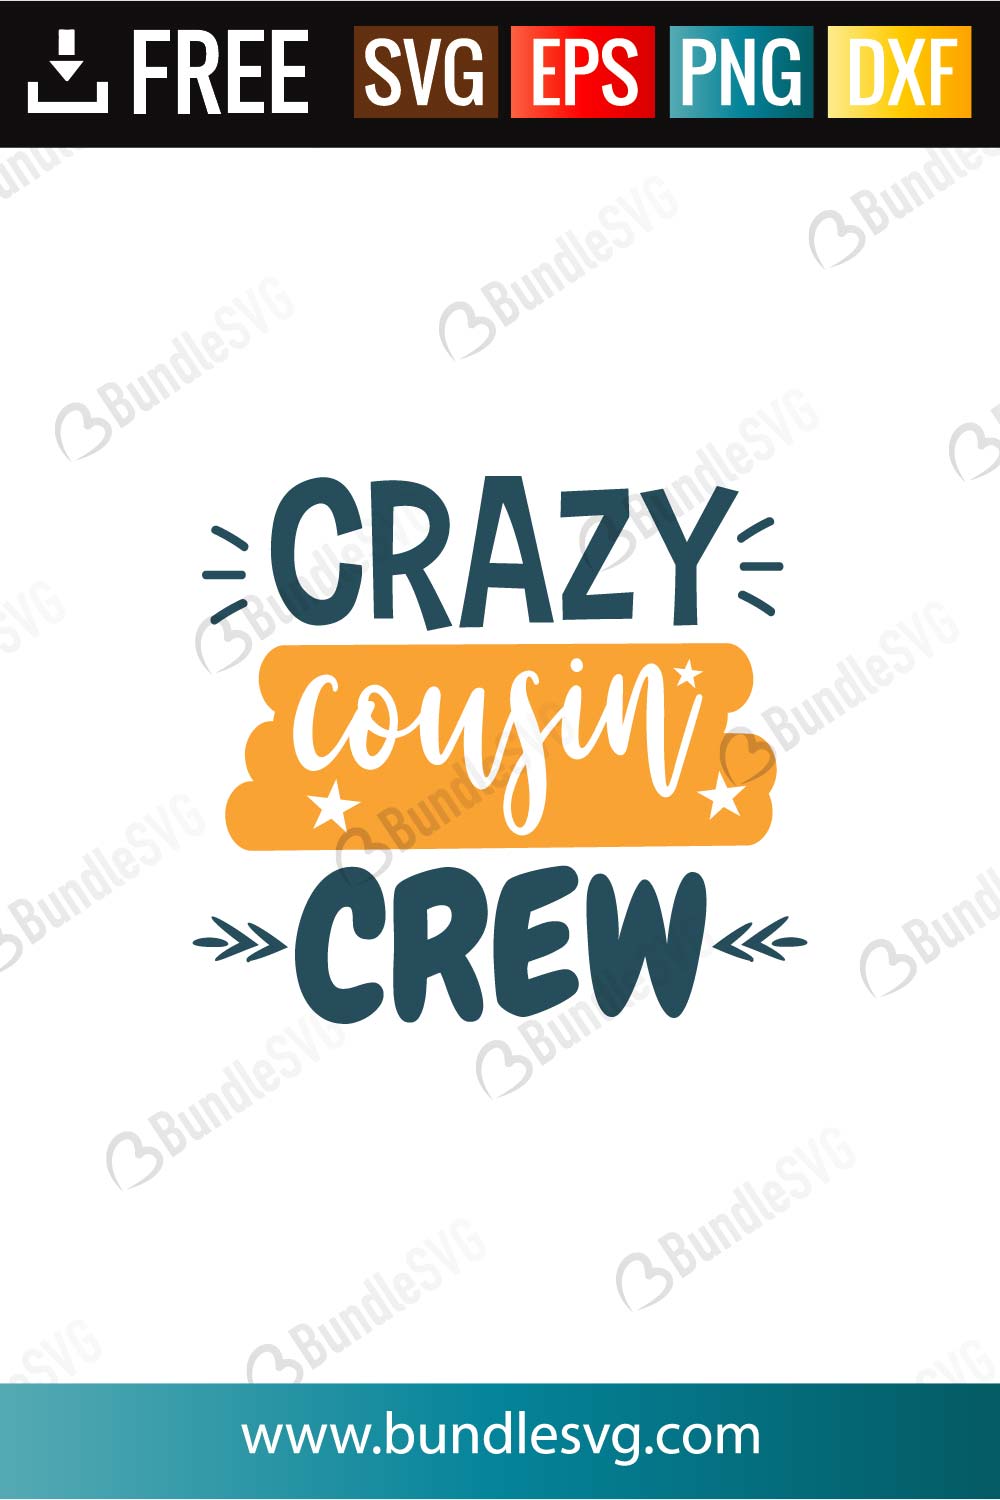 Download Crazy Cousin Crew Svg Cut Files Bundlesvg